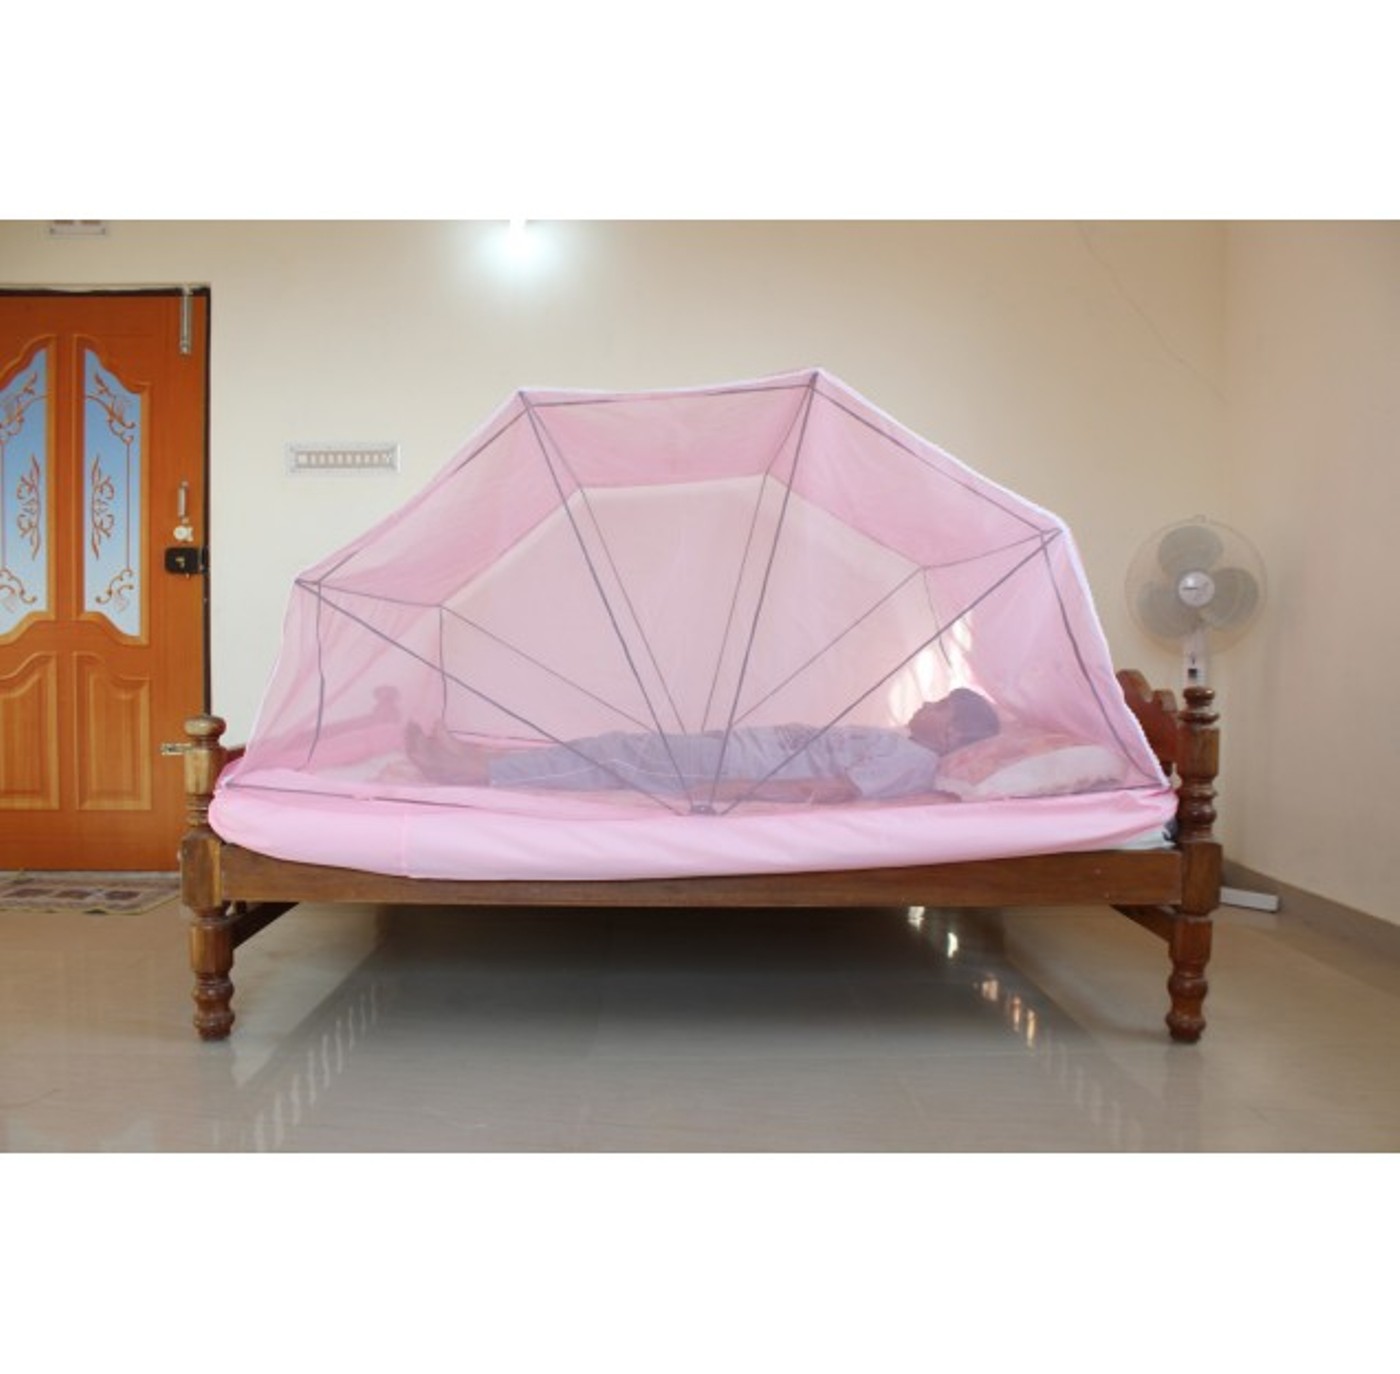 mosquito nets in chennai